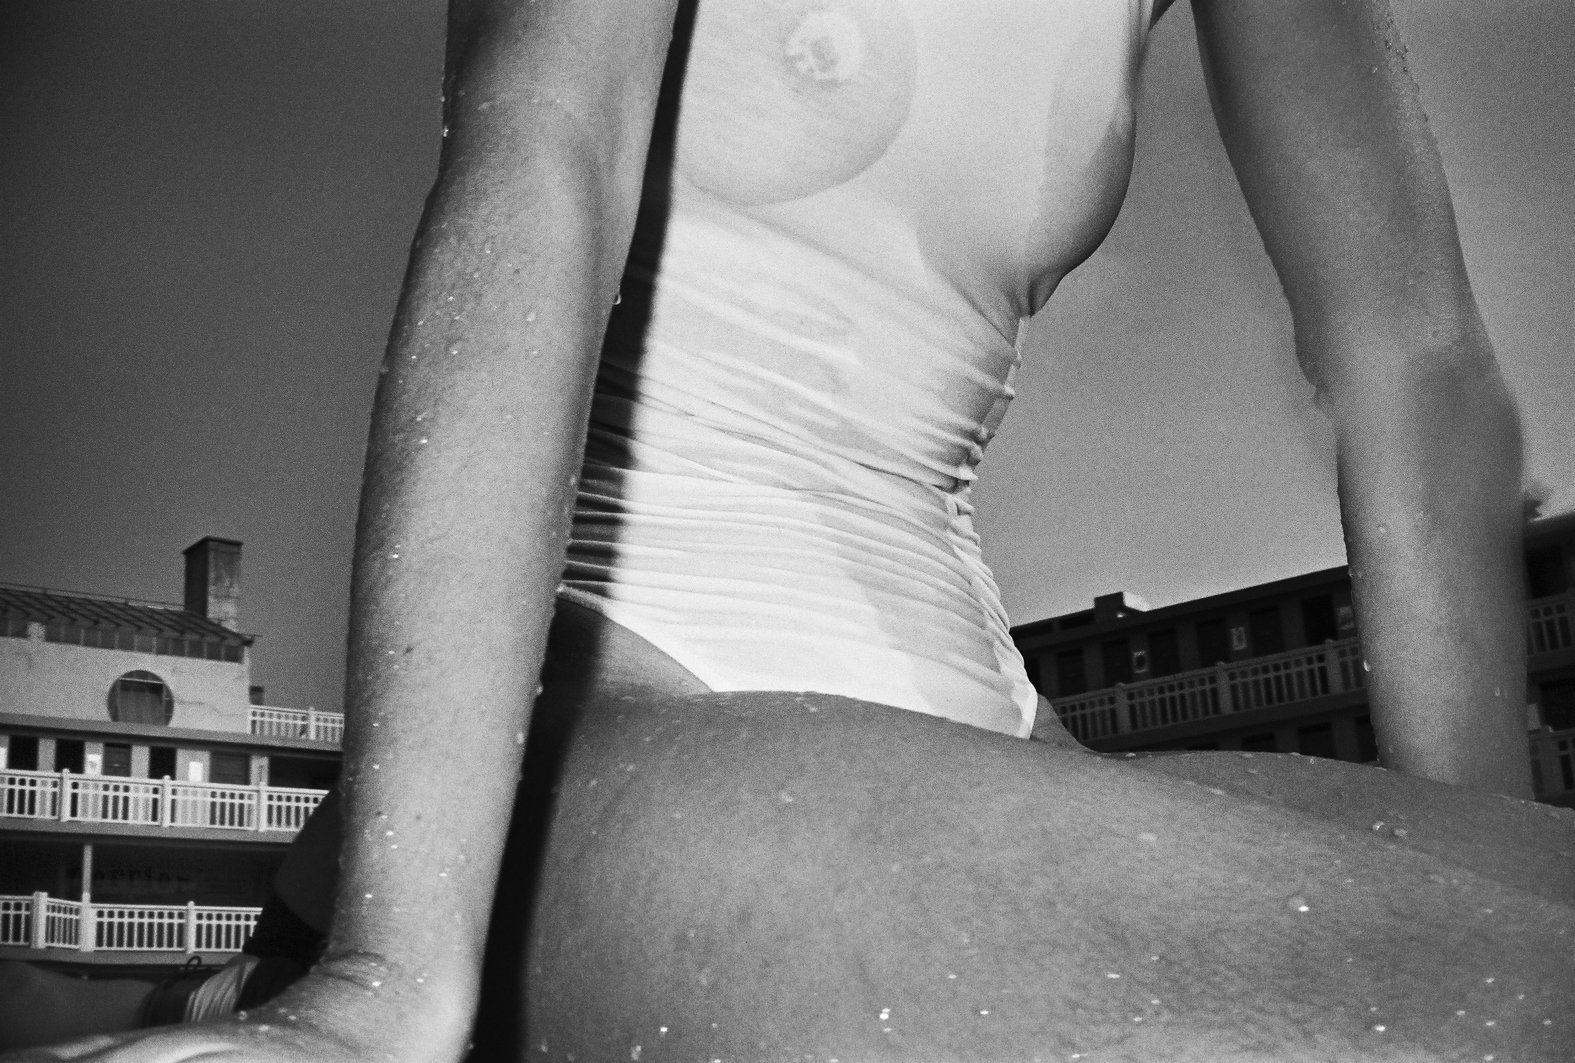 La piscina è vita! Gil Rigoulet, uno “sguardo libero come l’acqua”, all’Acquario Civico di Milano